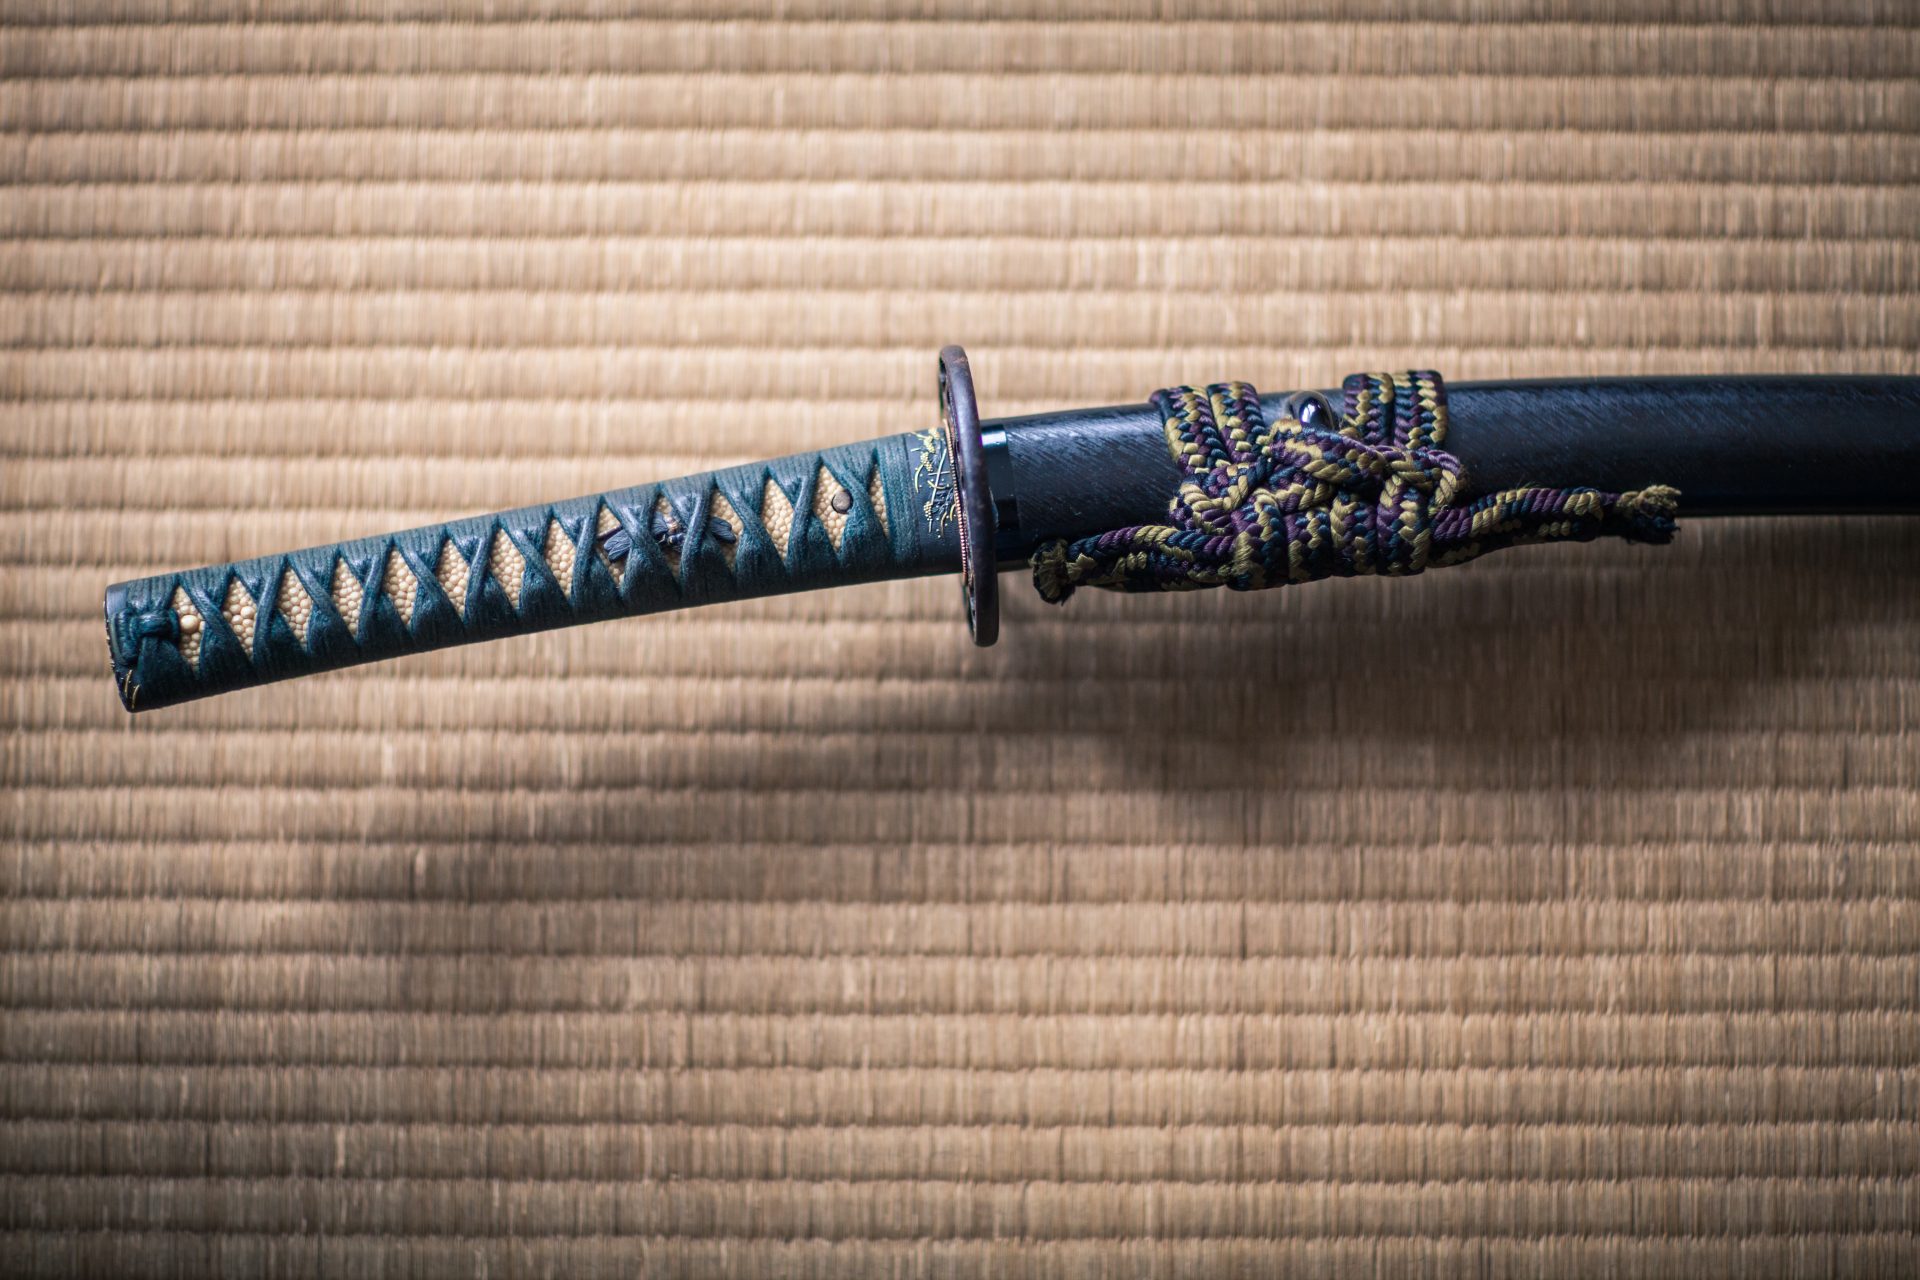 Il ritrovamento di un'antica spada che ha cambiato la storia giapponese